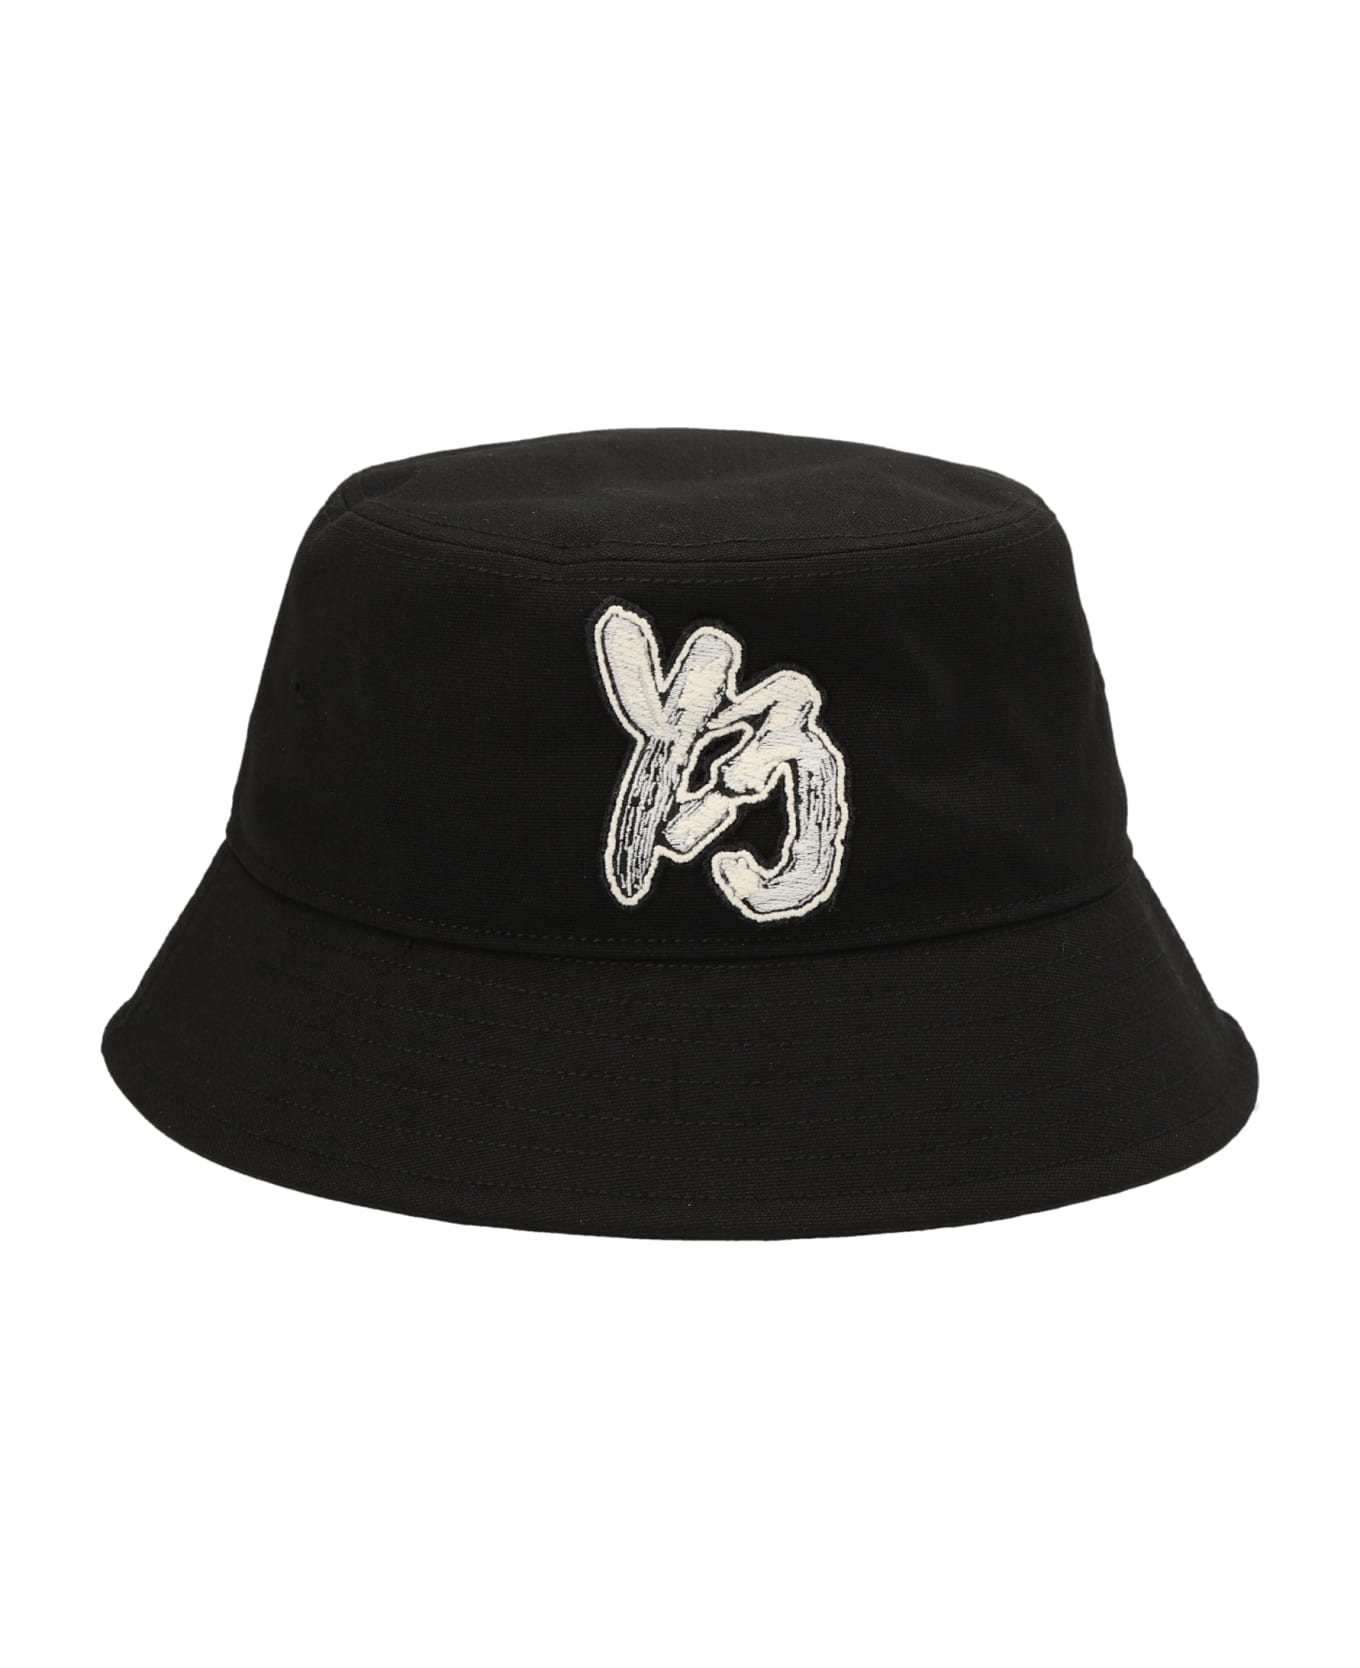 Y-3 '' Bucket Hat - Black 帽子